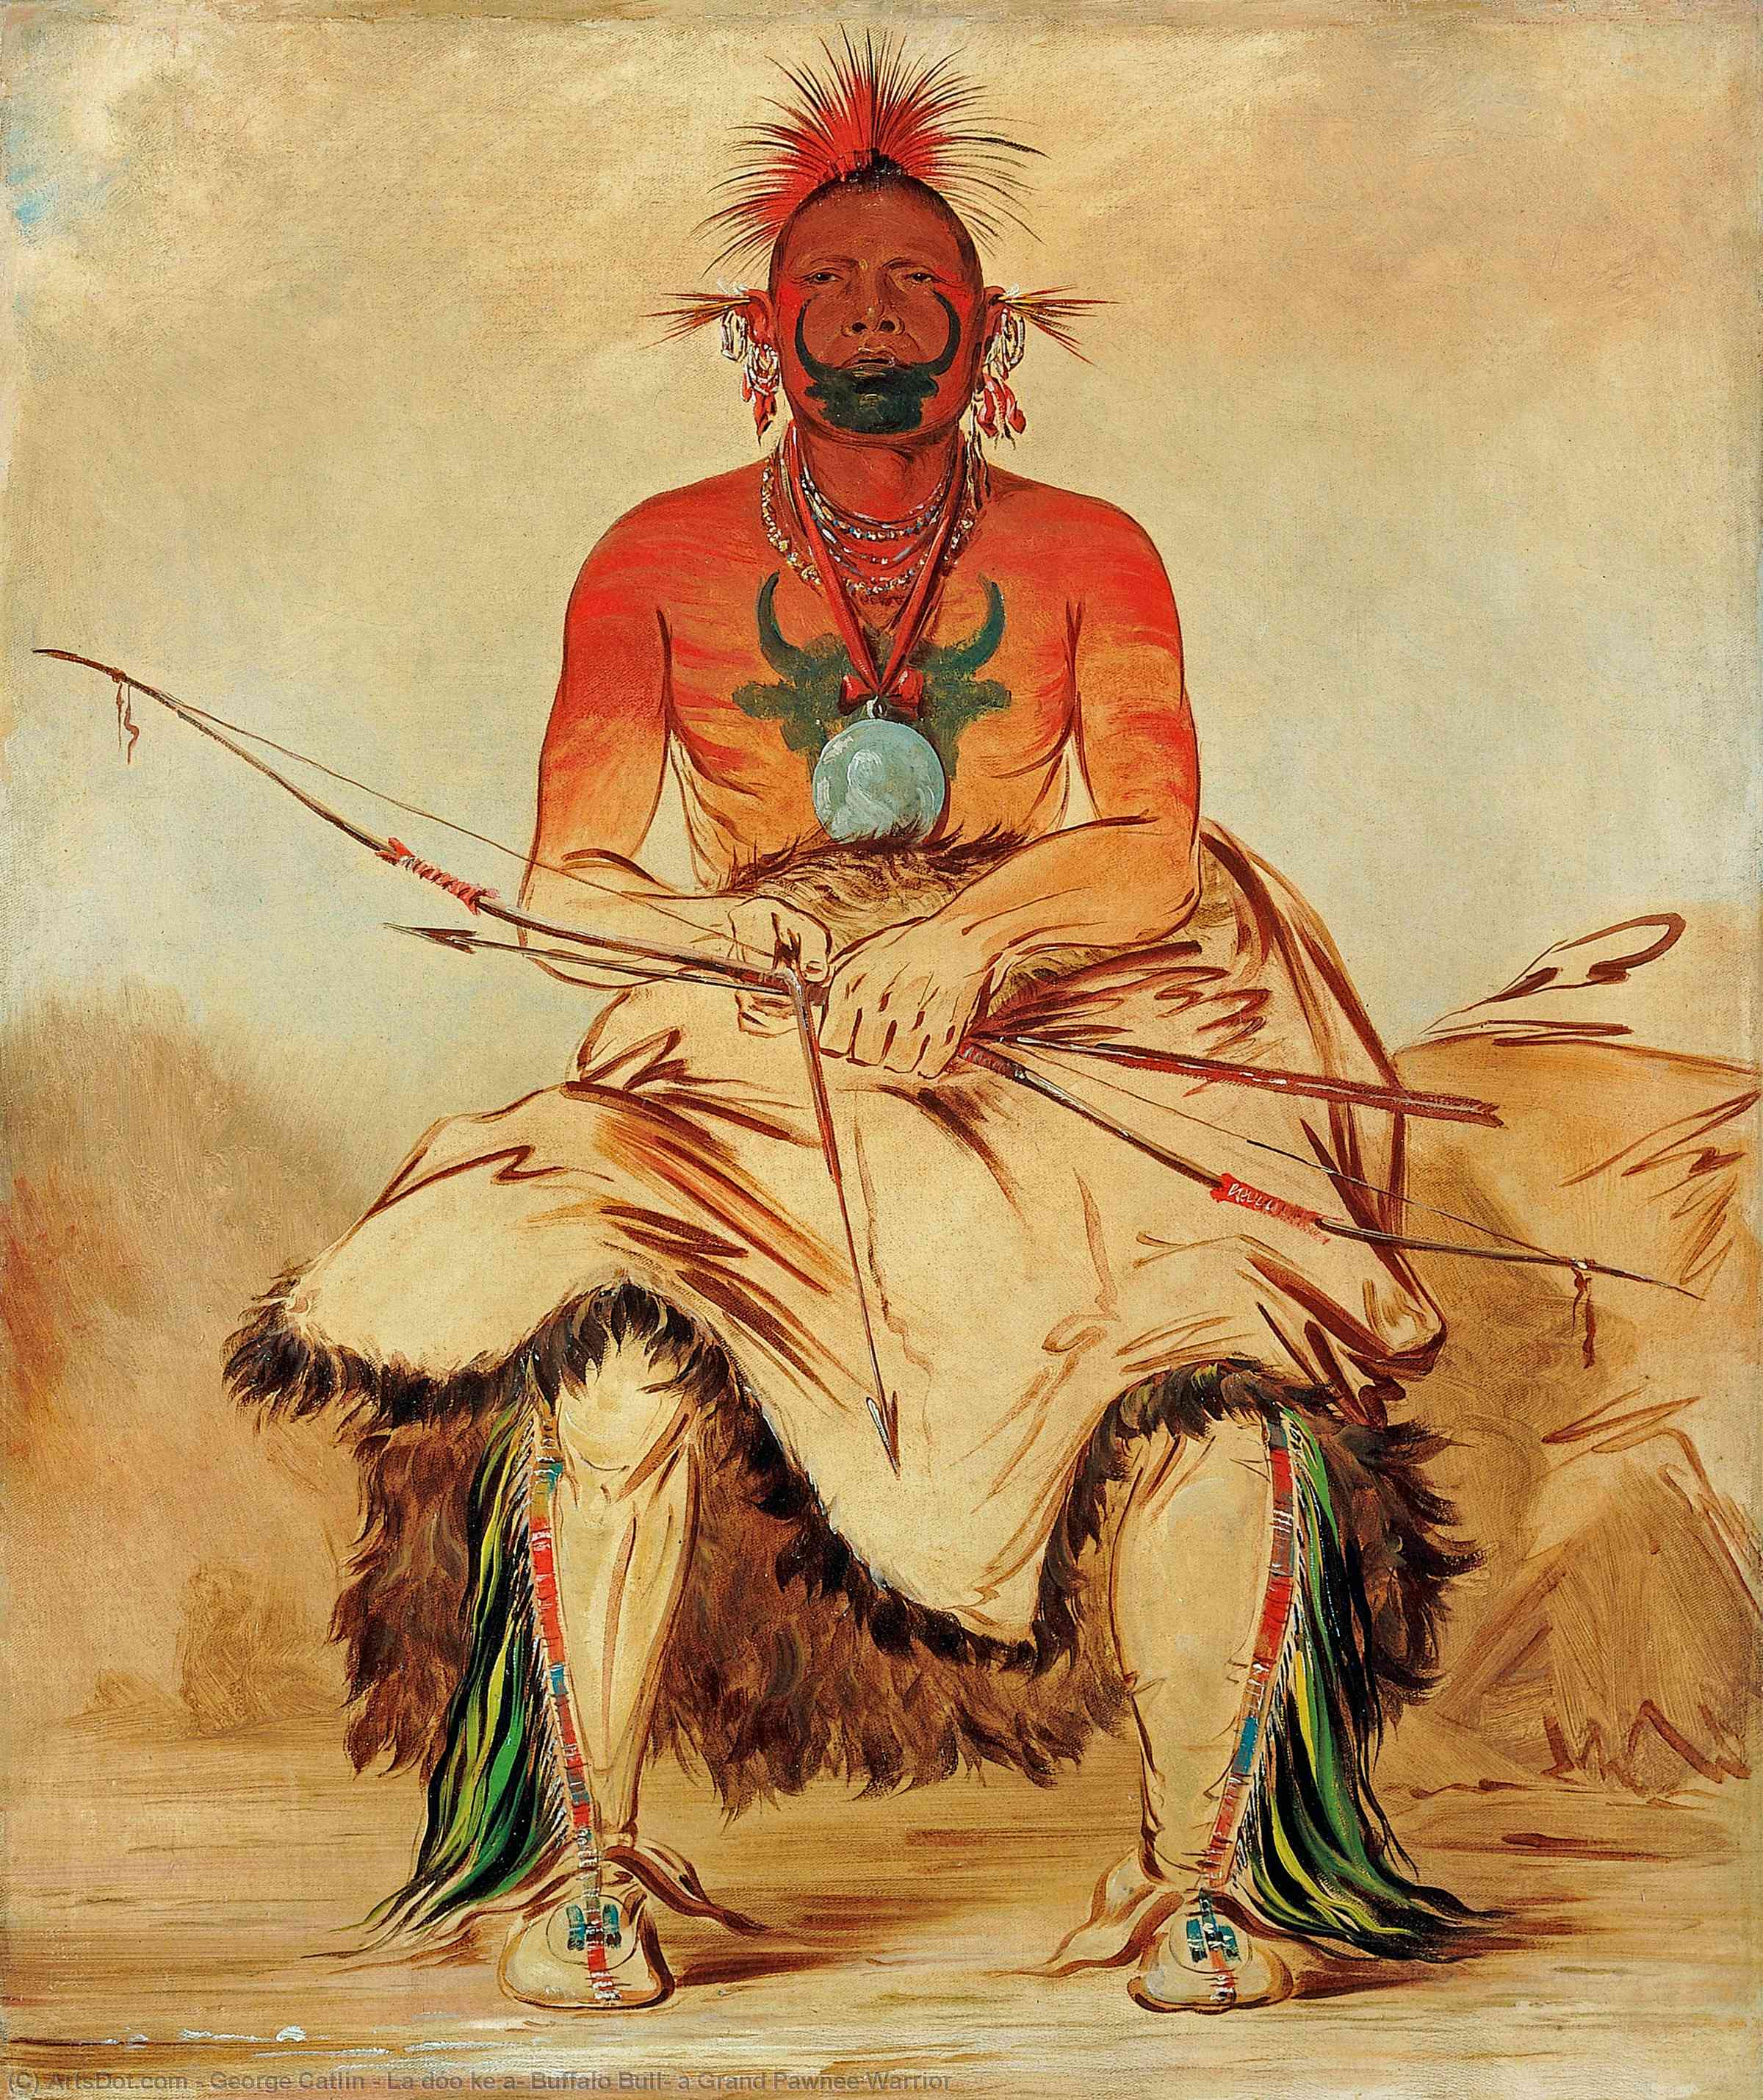 Wikioo.org - Bách khoa toàn thư về mỹ thuật - Vẽ tranh, Tác phẩm nghệ thuật George Catlin - La dóo ke a, Buffalo Bull, a Grand Pawnee Warrior